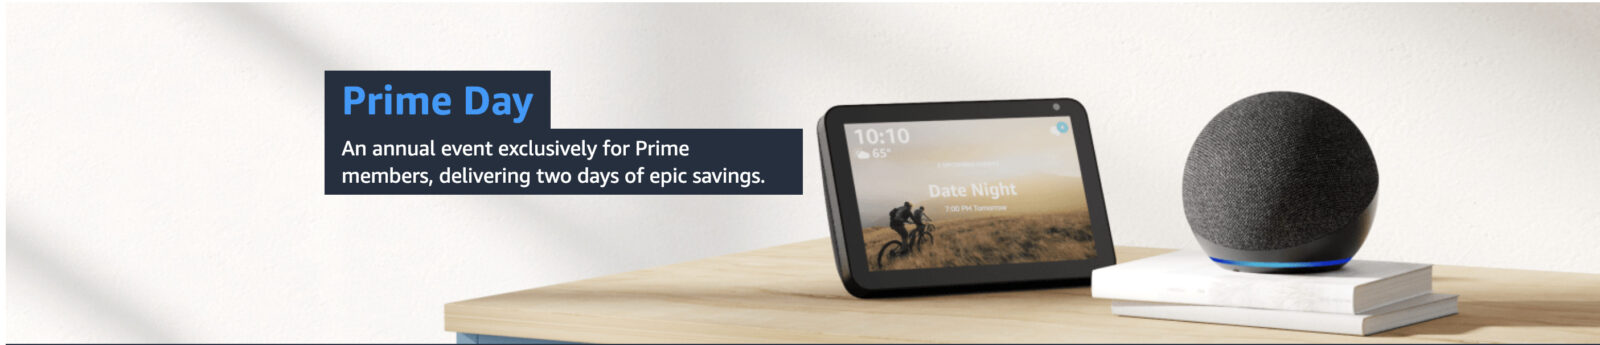 Як отримати значок Amazon Prime?